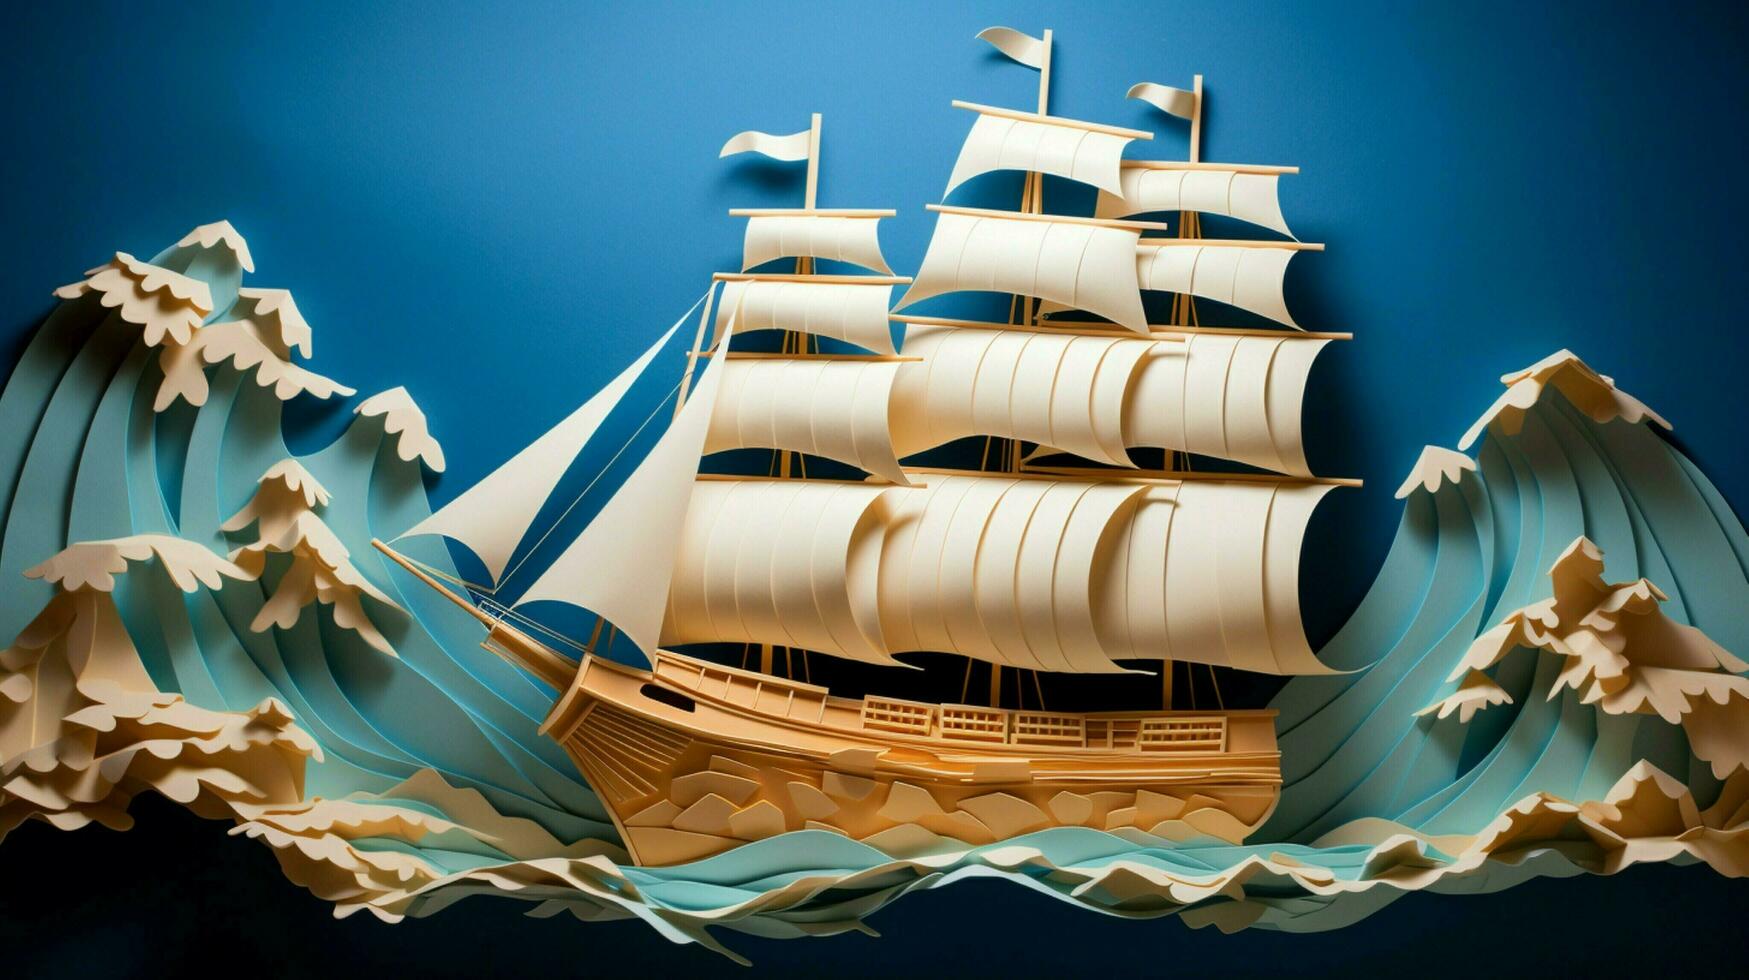 origami papper hantverk fartyg segel på fantasi nautisk foto